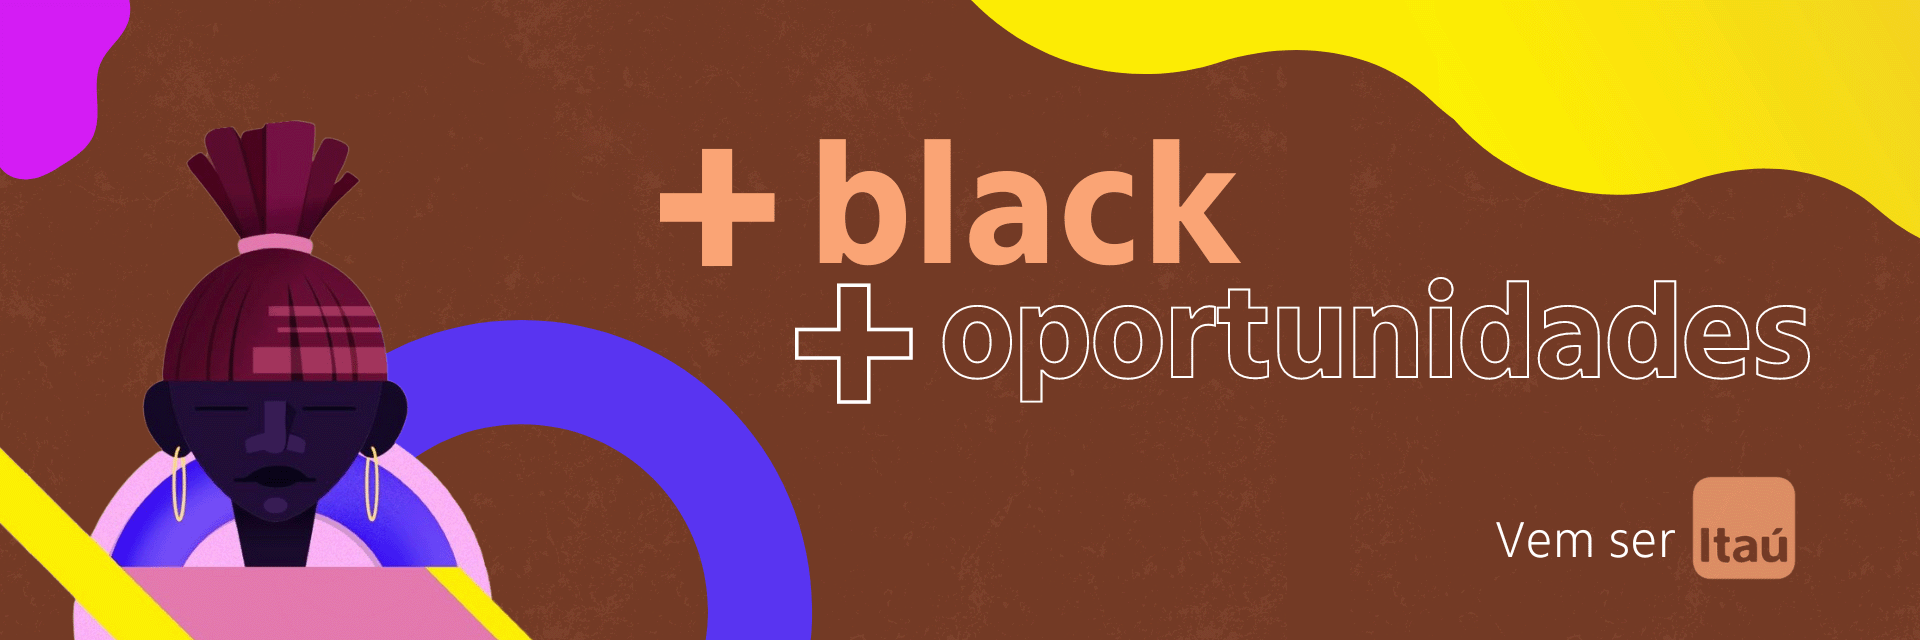 ilustração com elementos gráficos de diversas cores num fundo marrom, com as palavras mais black, mais oportunidades, vem ser Itaú